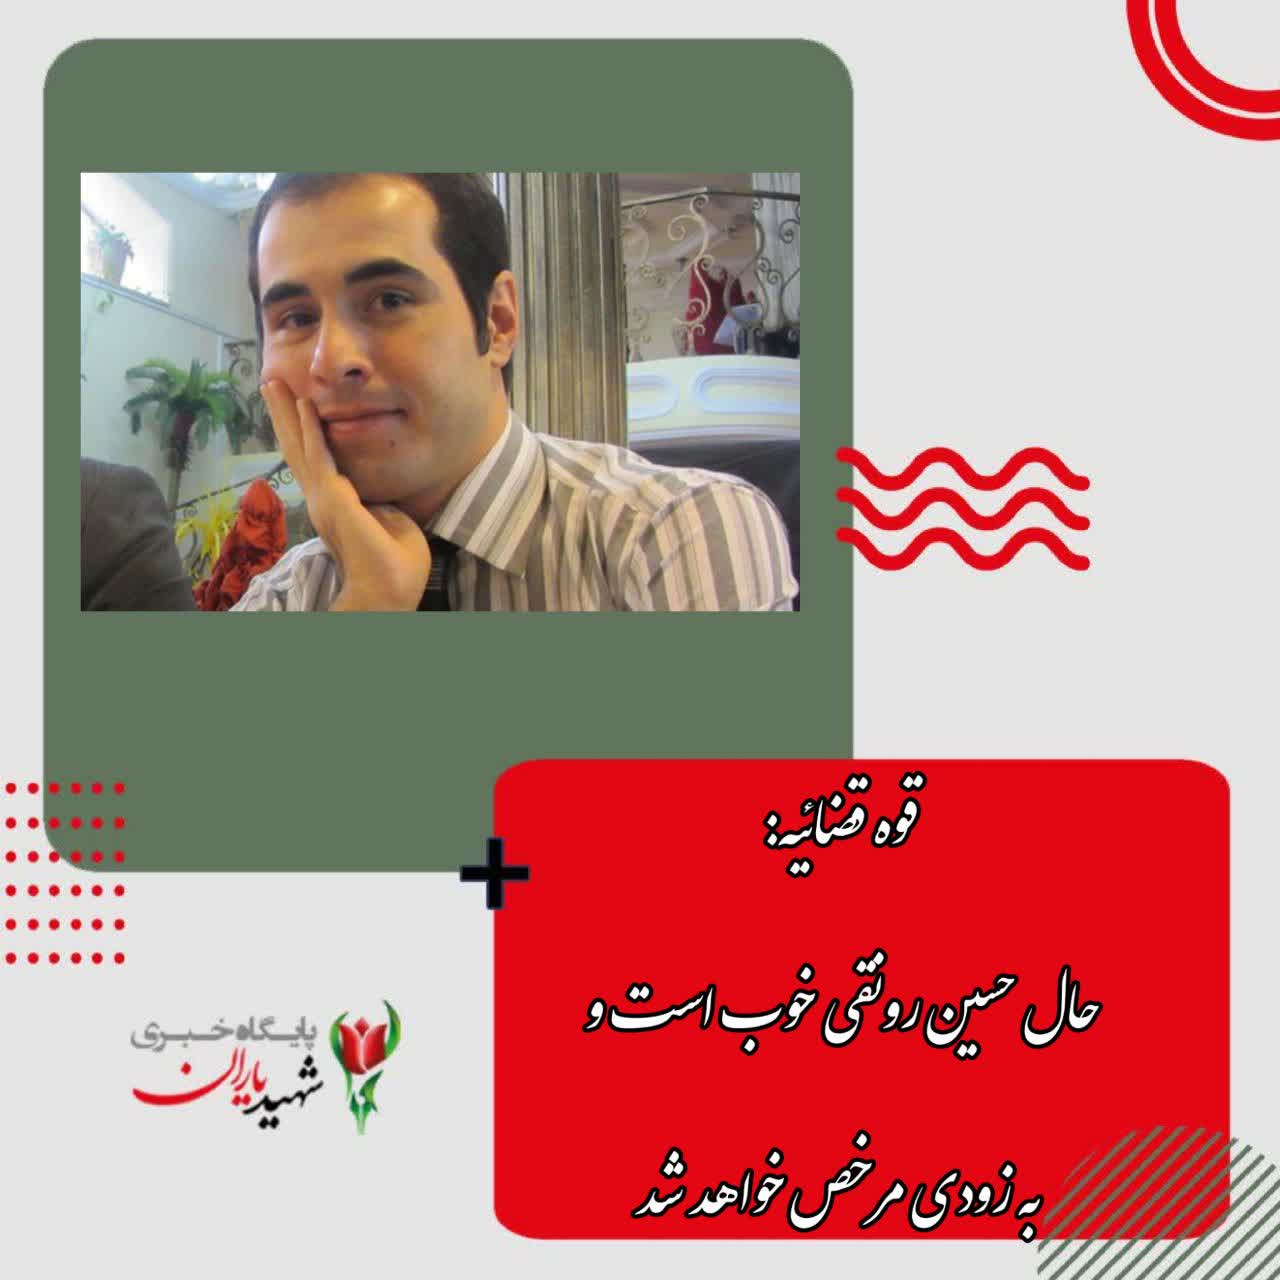 قوه قضائیه: حال حسین رونقی خوب است و به زودی مرخص خواهد شد